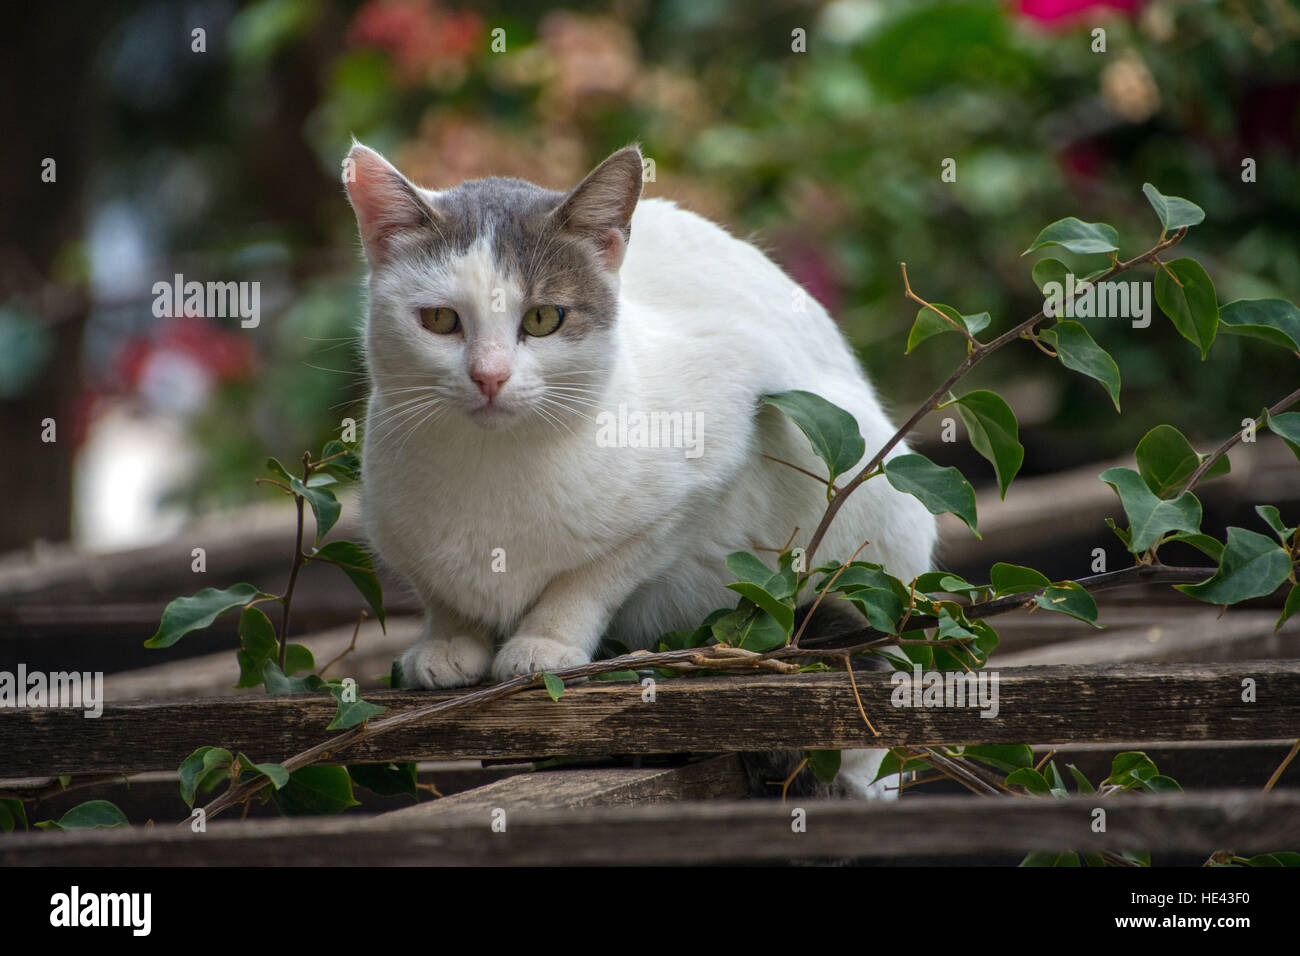 L'un gris et blanc les chats sauvages assis sur treillis en bois looking at camera de bougainvilliers derrière Banque D'Images